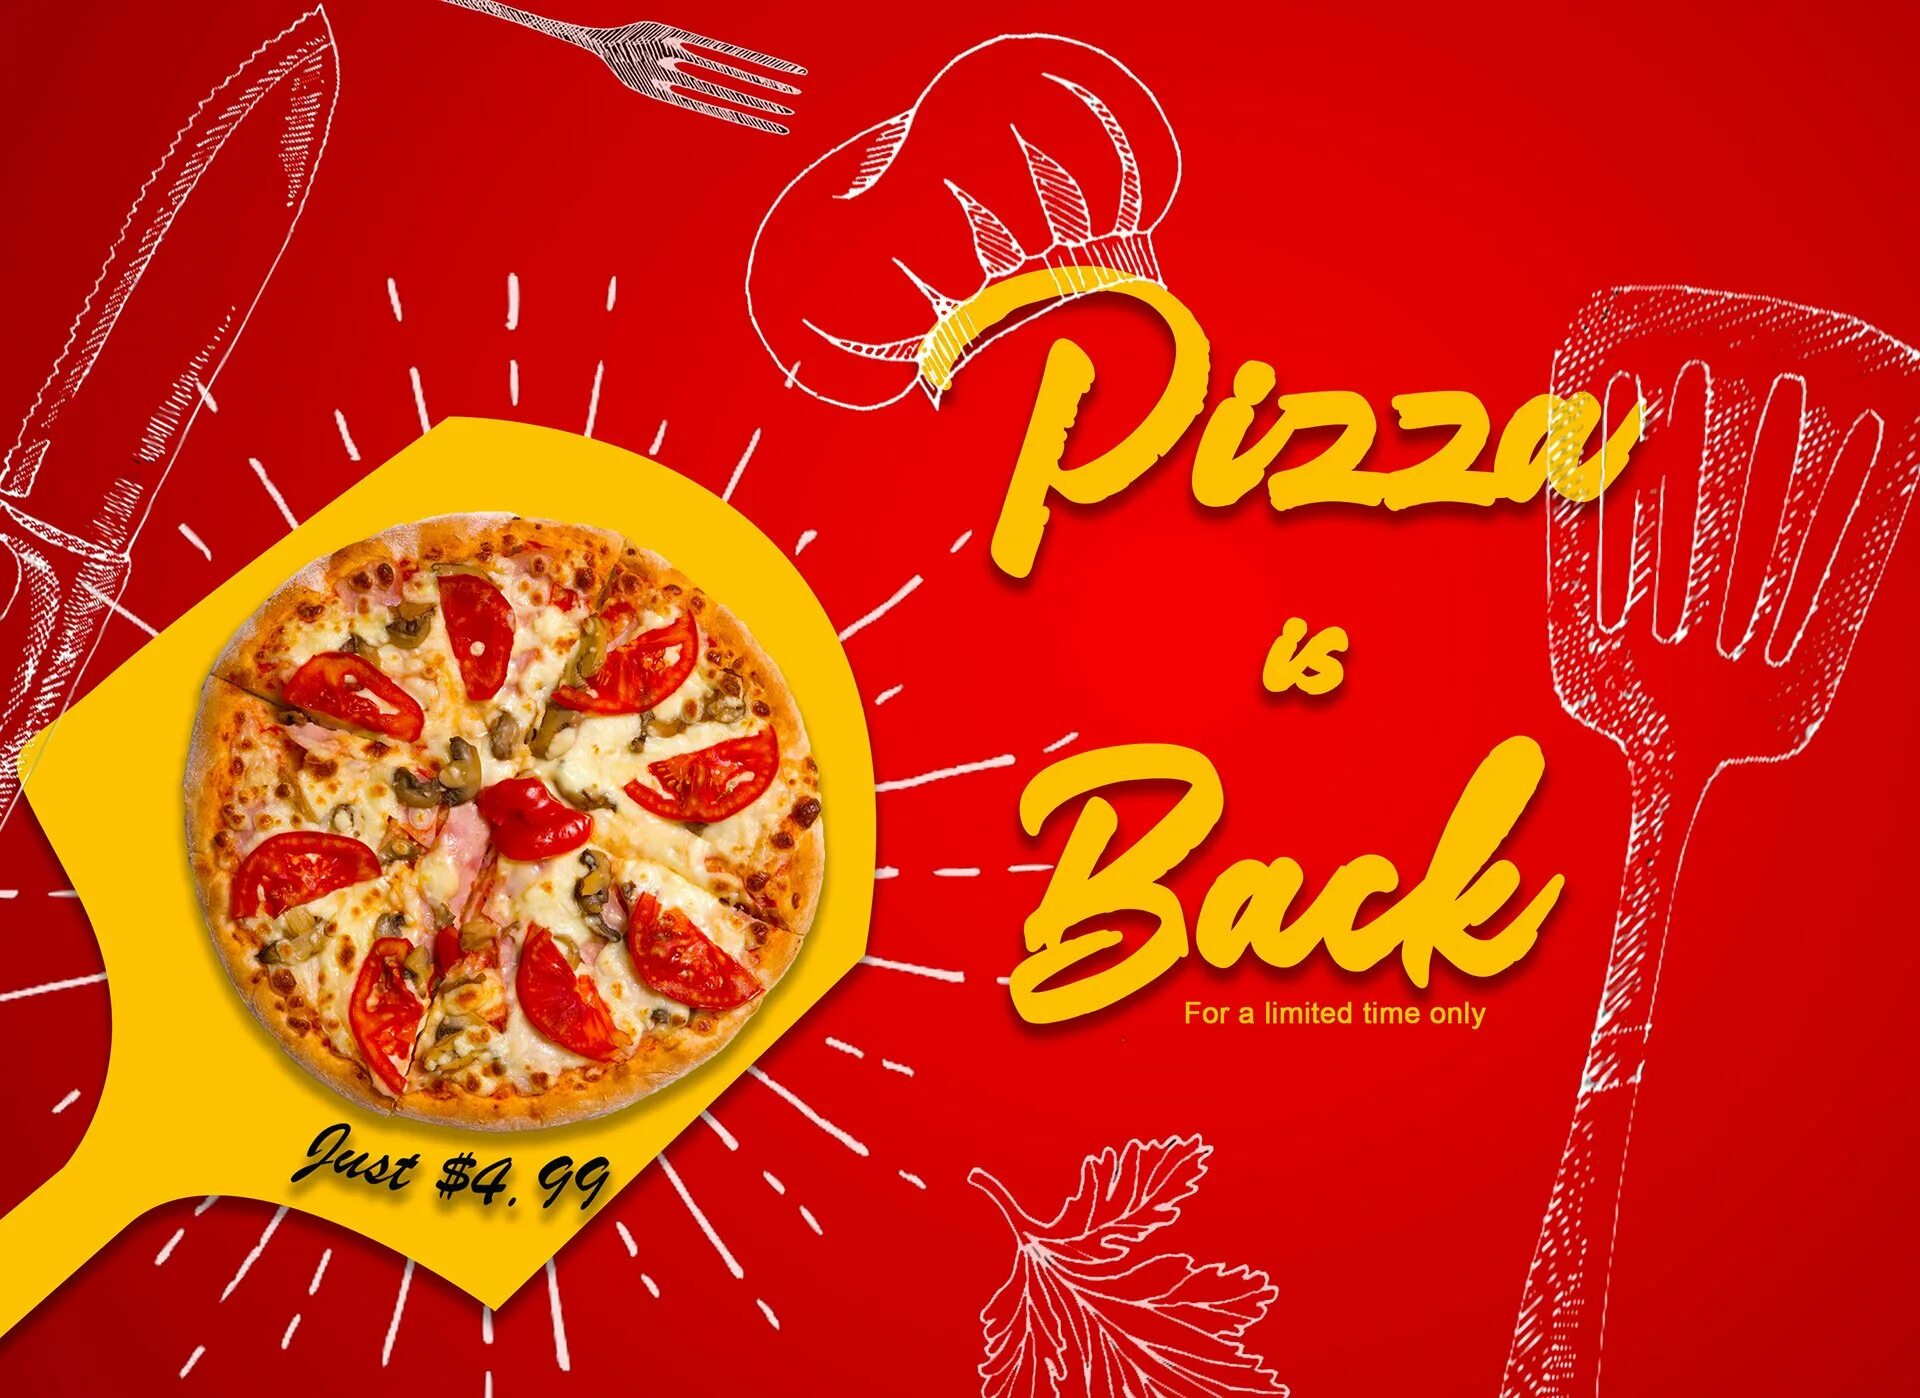 Пиццерия слово. Рекламный баннер пиццерии. Рекламный плакат пиццерии. Пицца баннер. Реклама пиццы.